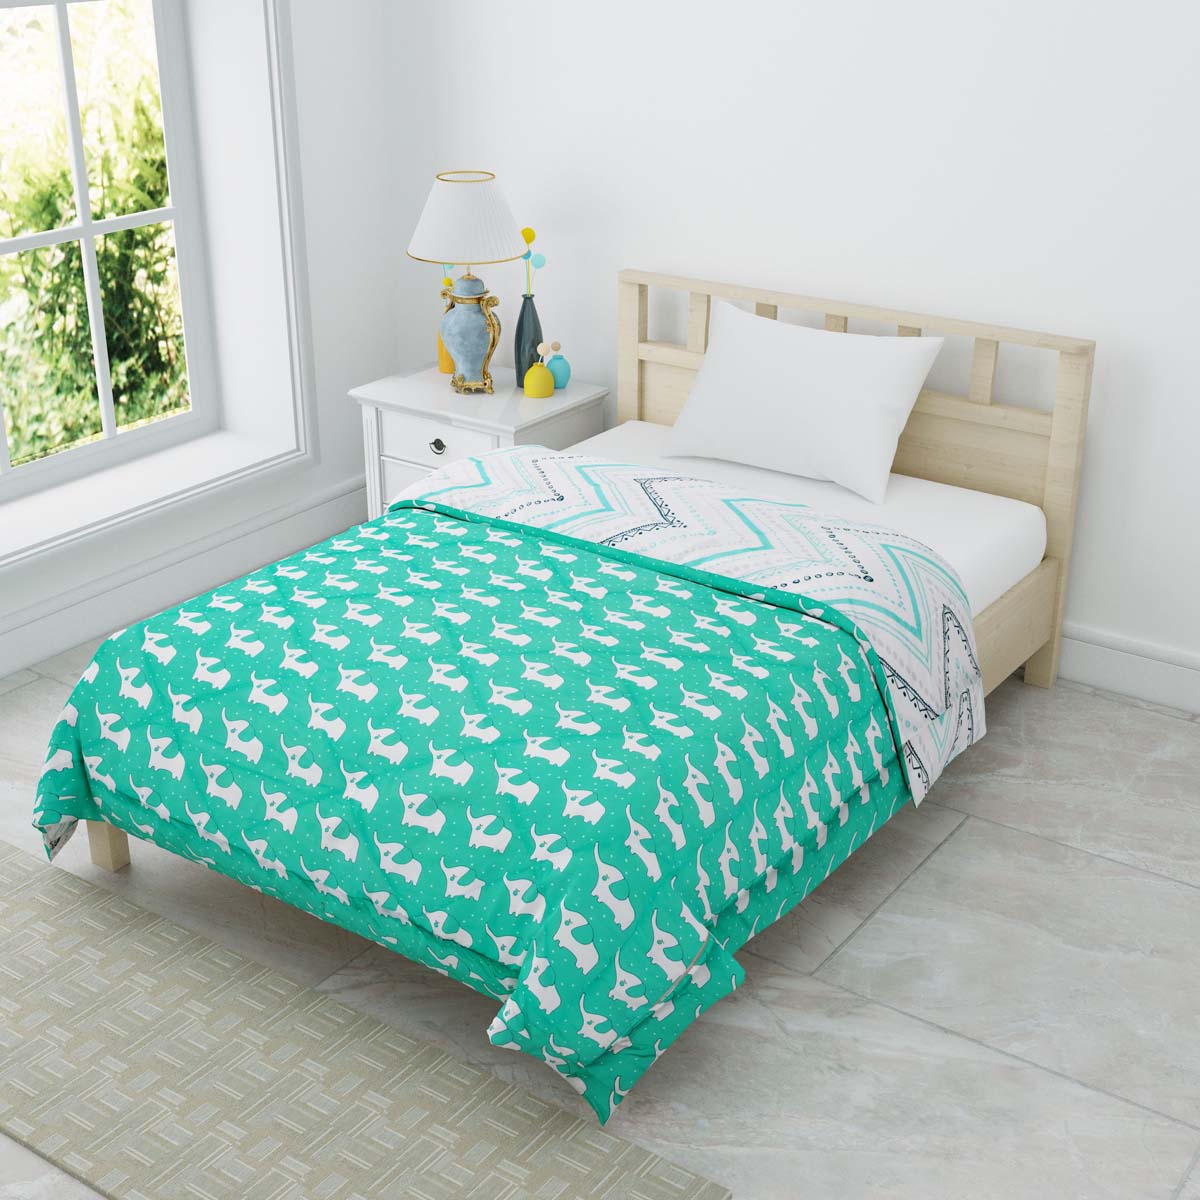 Minitrunks Green Single Bed Kids Comforter